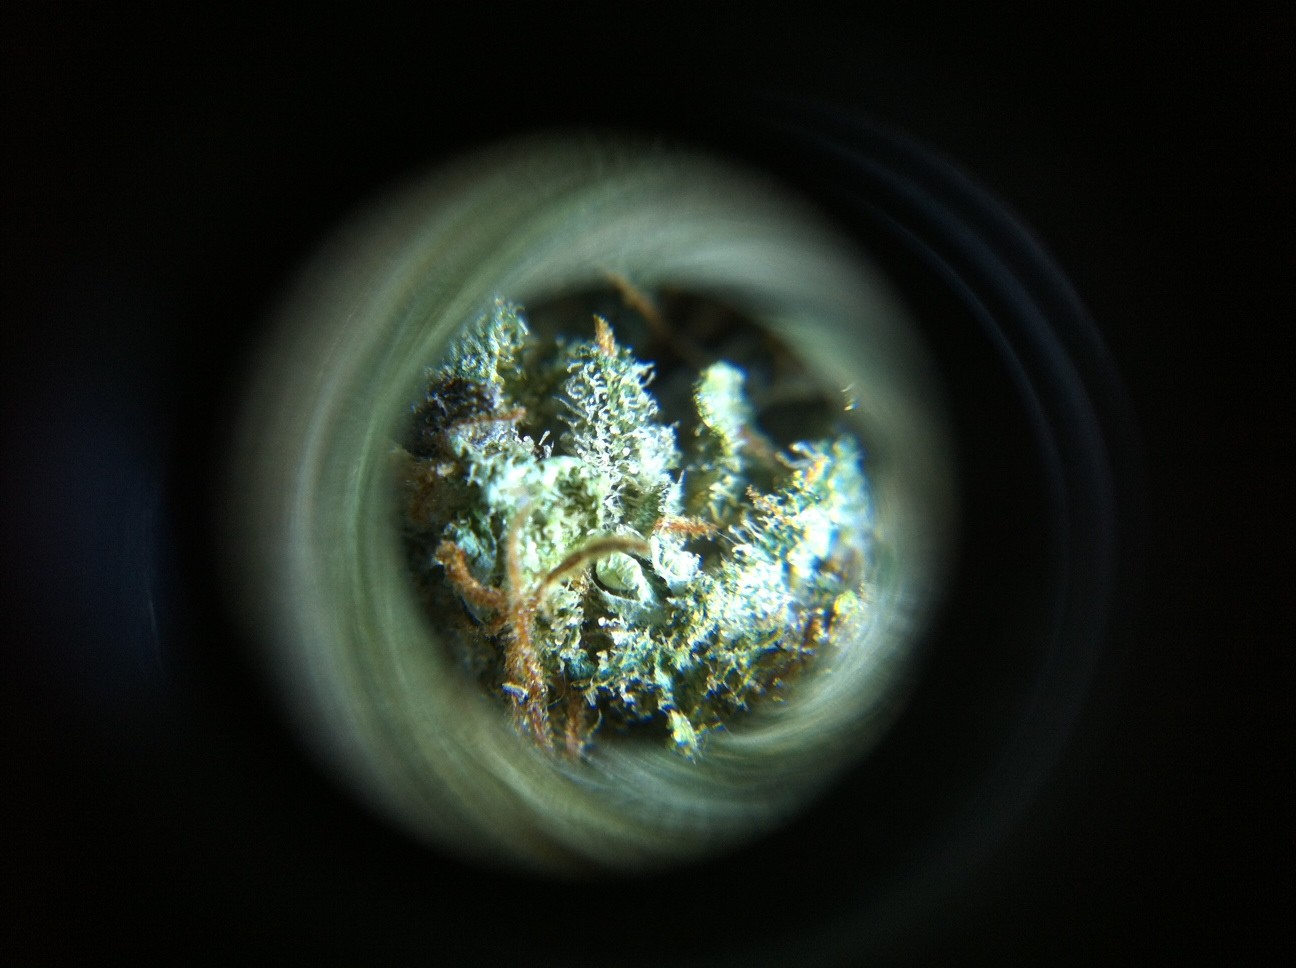 Microscopio para ver los tricomas y resina de la marihuana 0